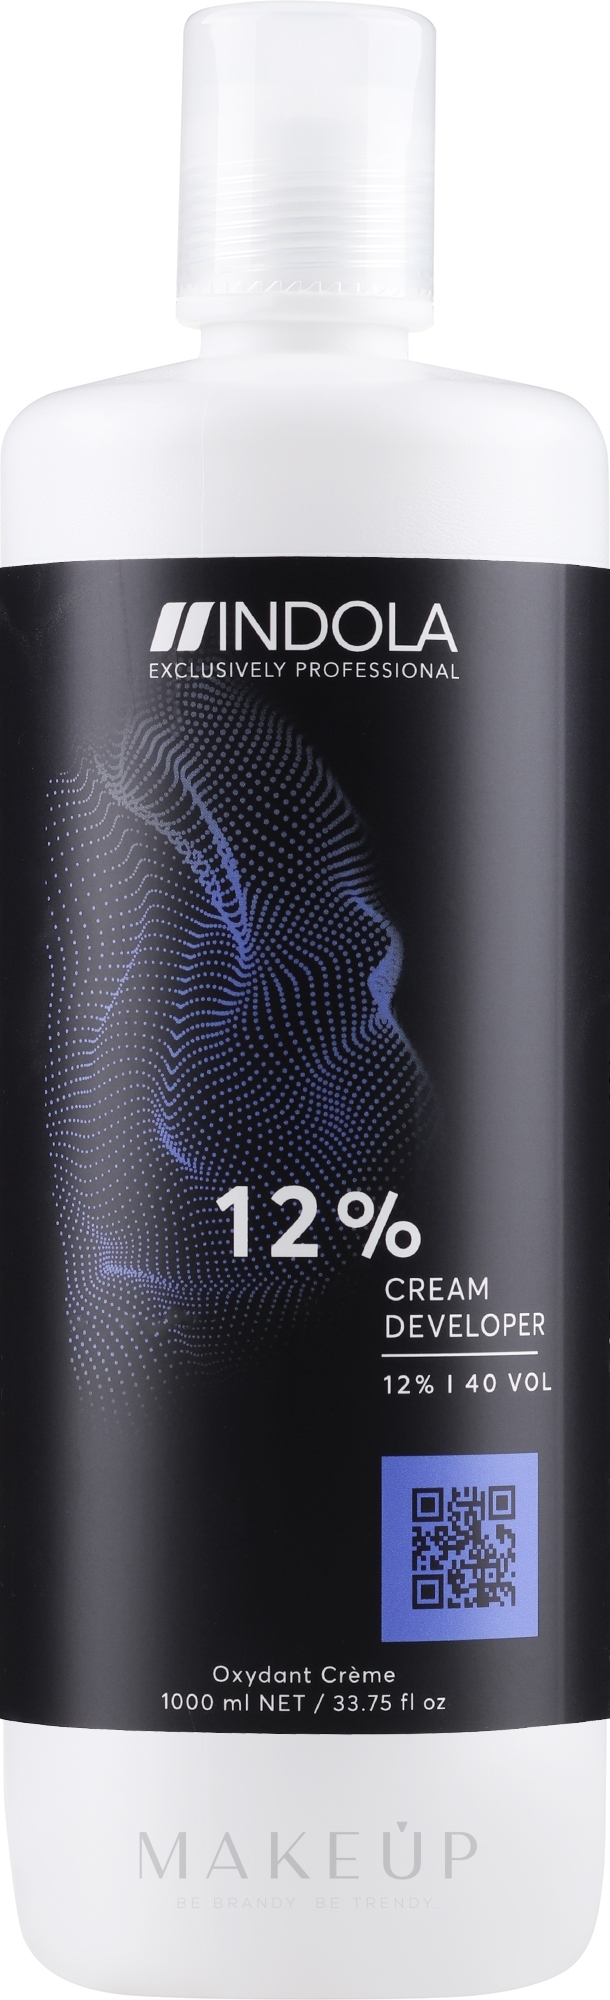 Entwicklerlotion 12% - Indola Profession Cream Developer 12% 40 vol — Bild 1000 ml